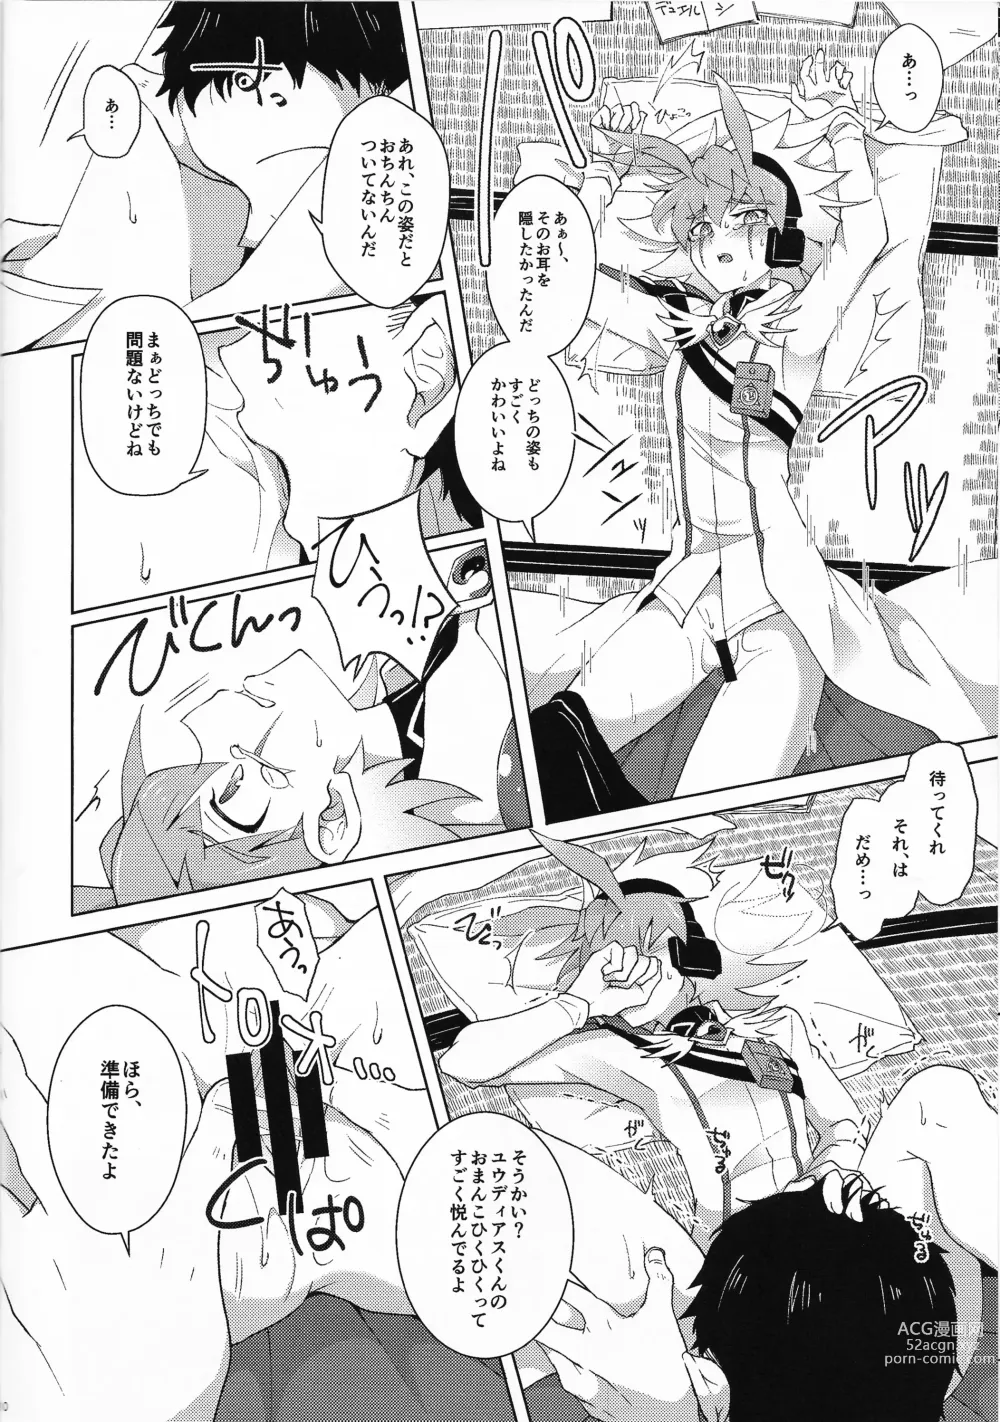 Page 9 of doujinshi Kibako no Naka no Cartumata